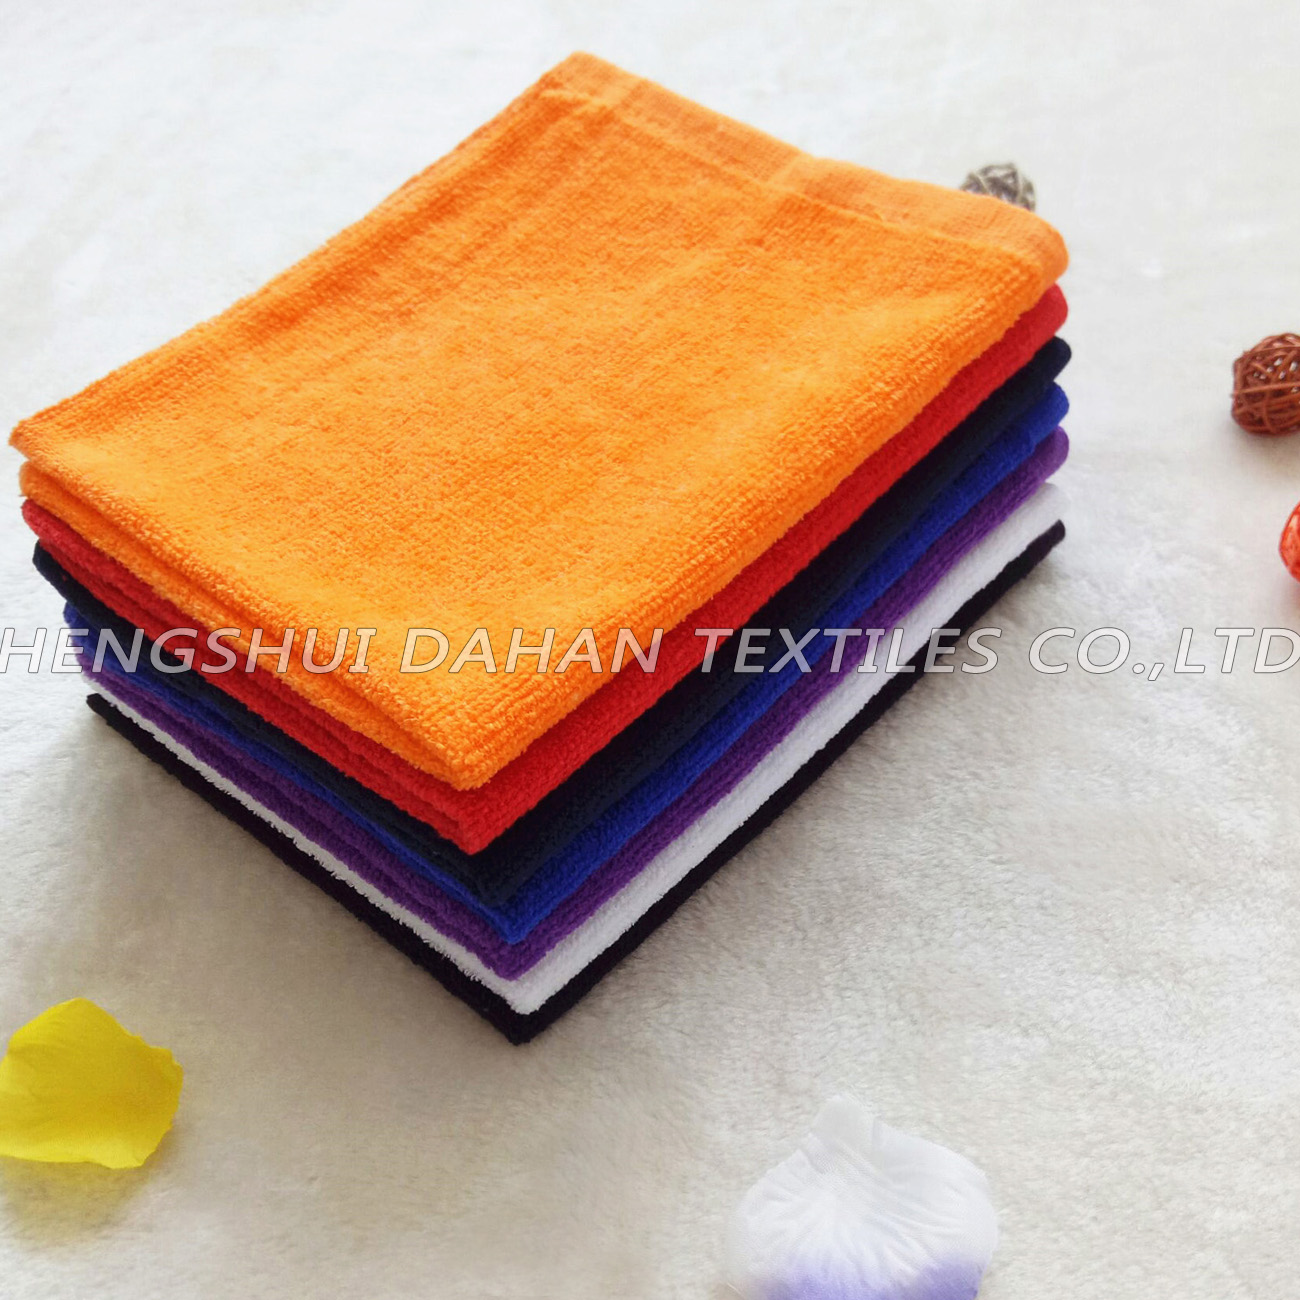 100%cotton solid color kitchen towels.